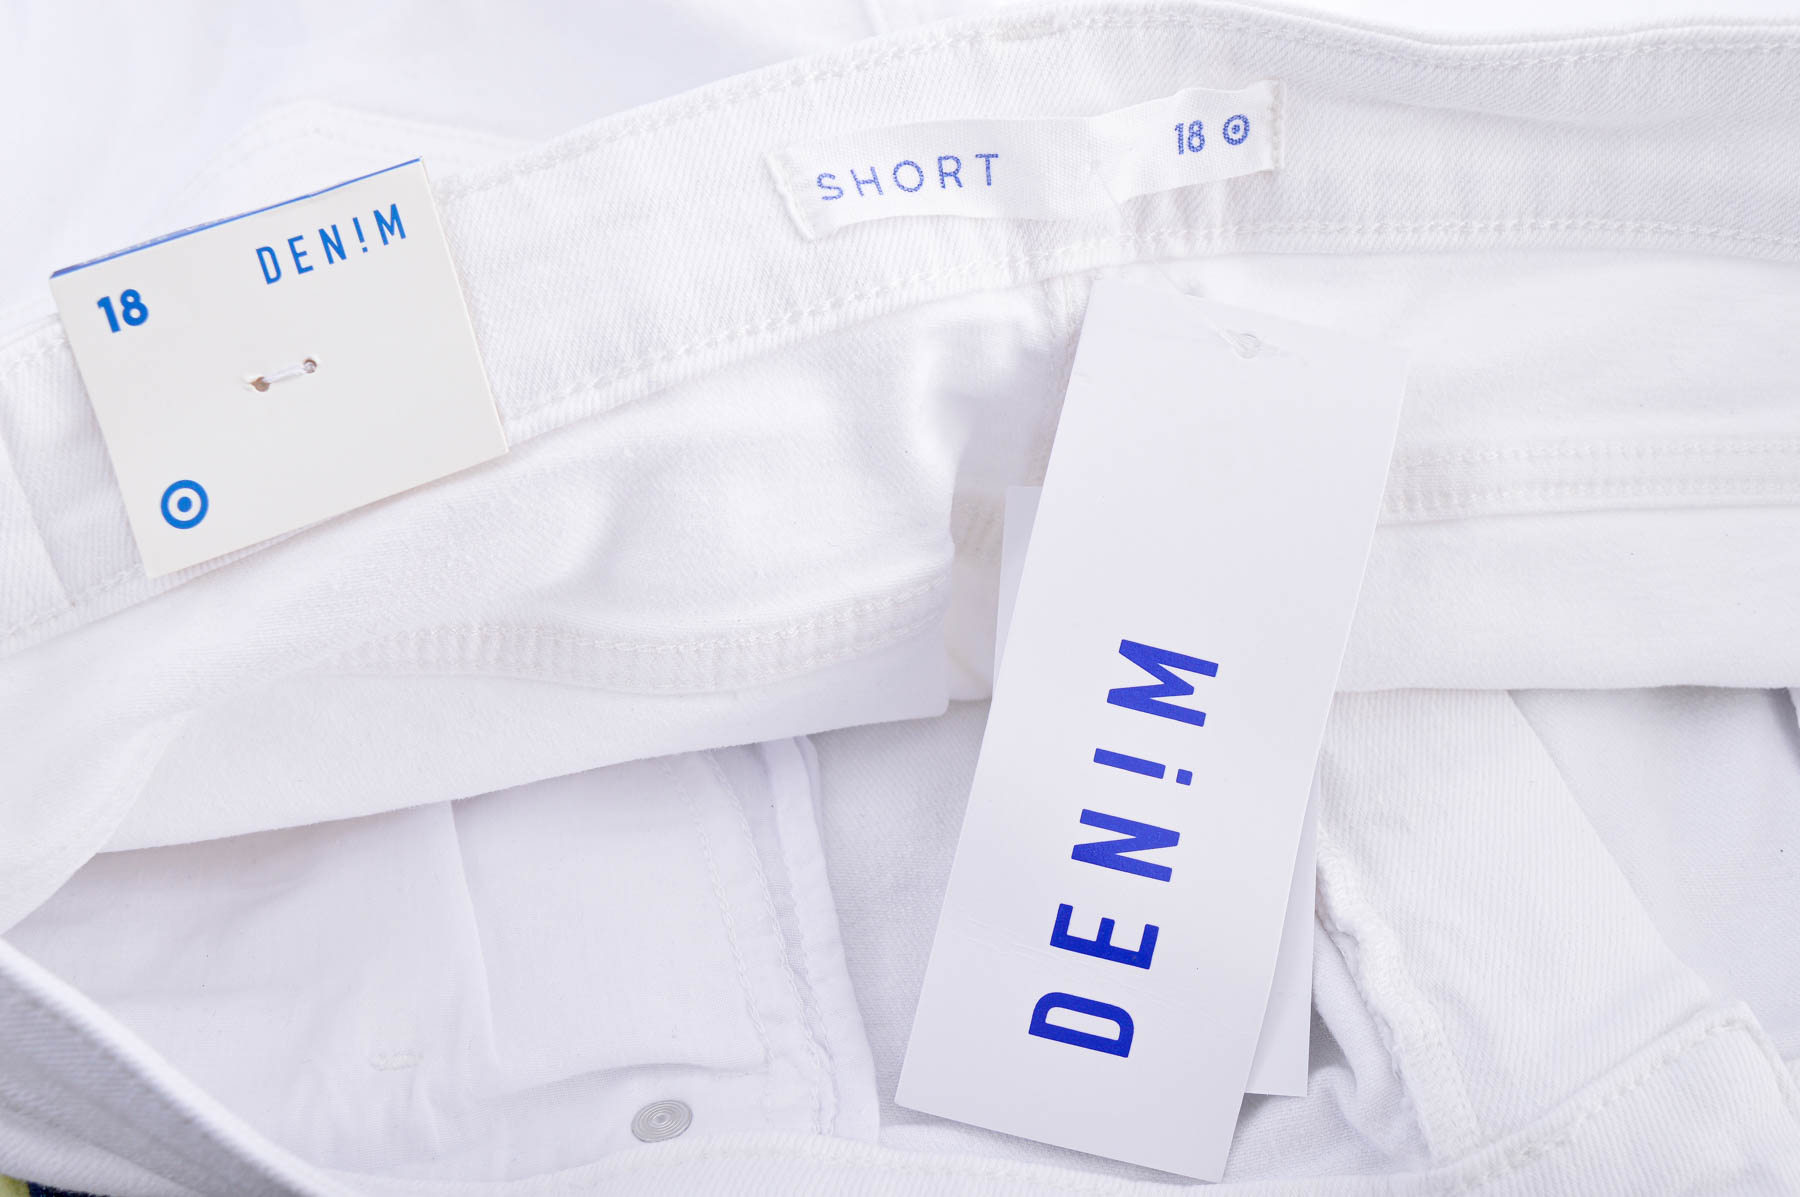 Female shorts - Target DENIM - 2